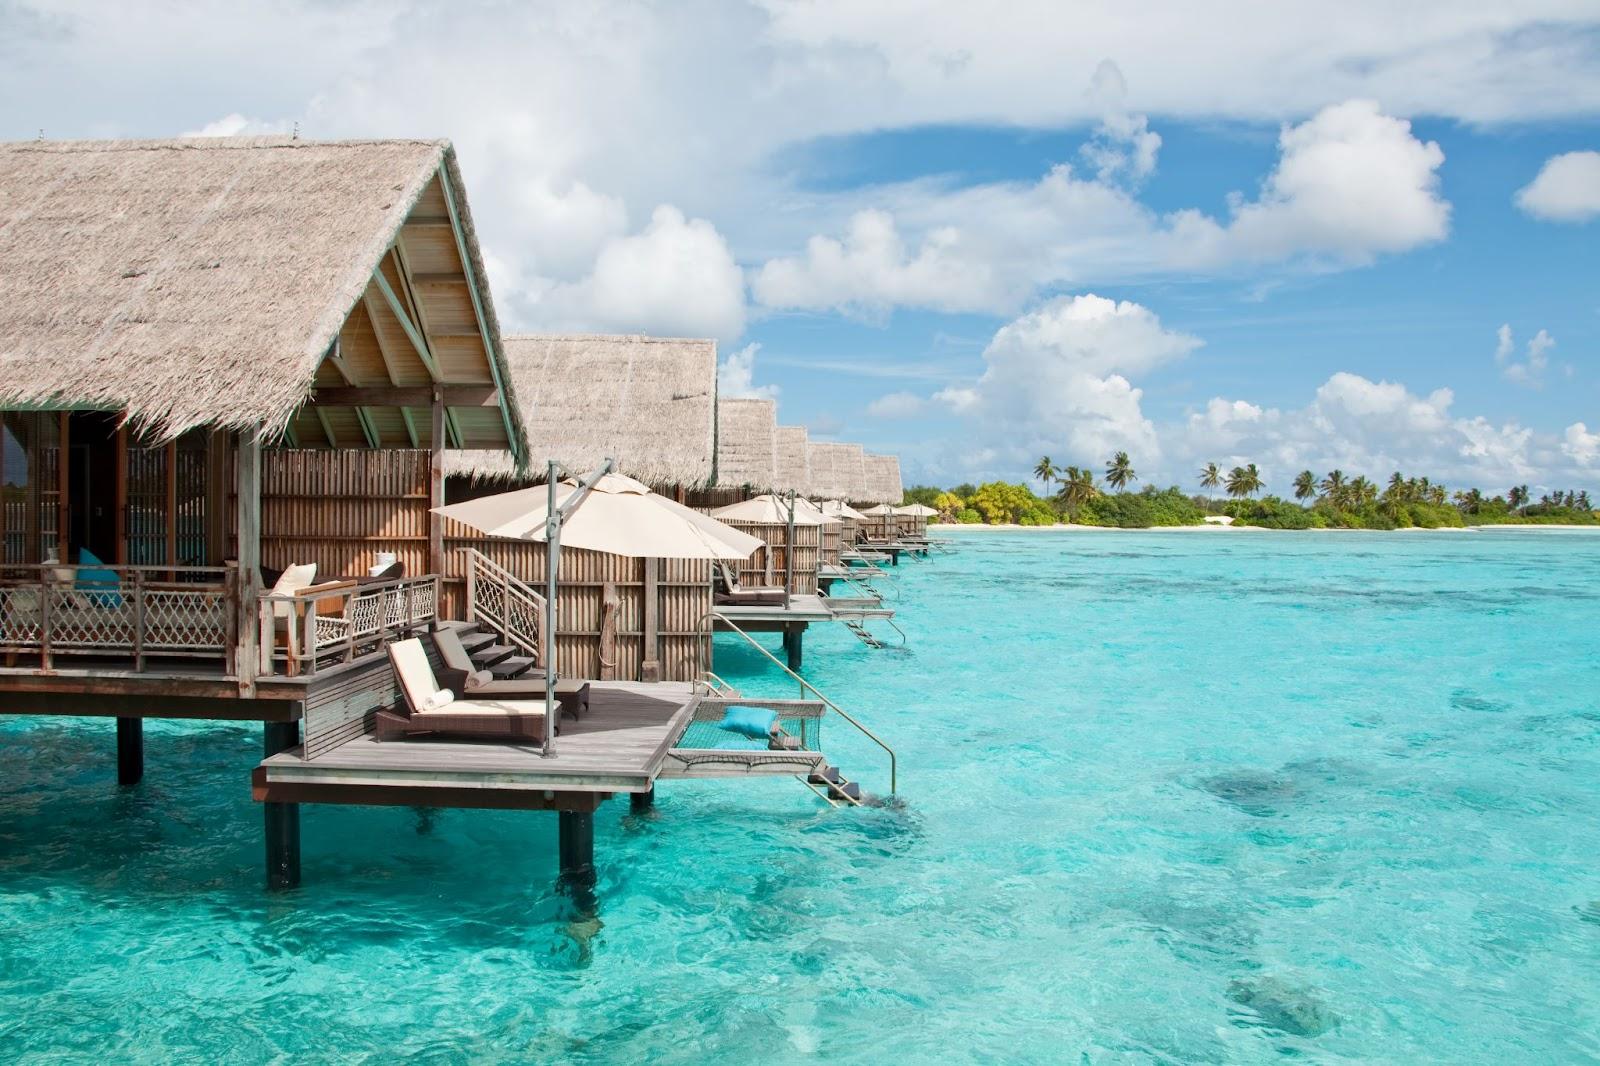 Water villas in the ocean Maldives